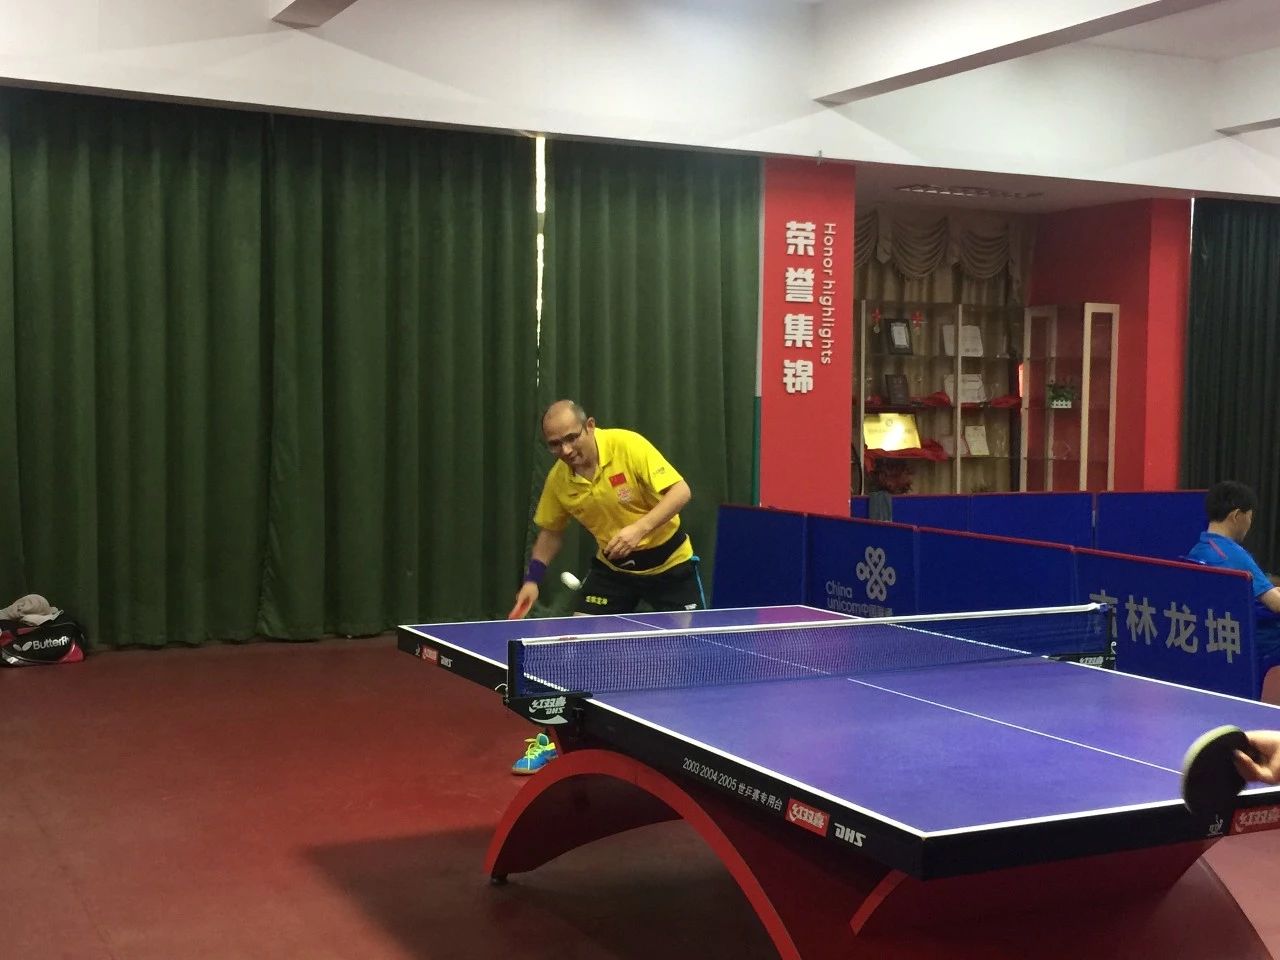 “乒乓传情、粽会有您”2019年安徽朗坤乒乓俱乐部 球友交流赛纪实(图18)